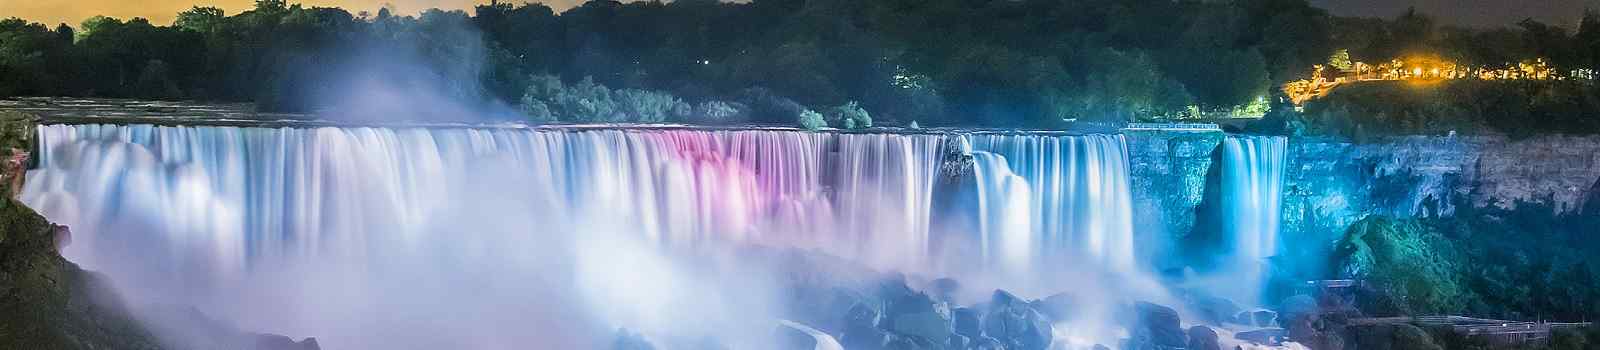 TORONTO-EXP  Juwelen des Nordostens Niagarafaelle farbenfroh beleuchtet in der Nacht